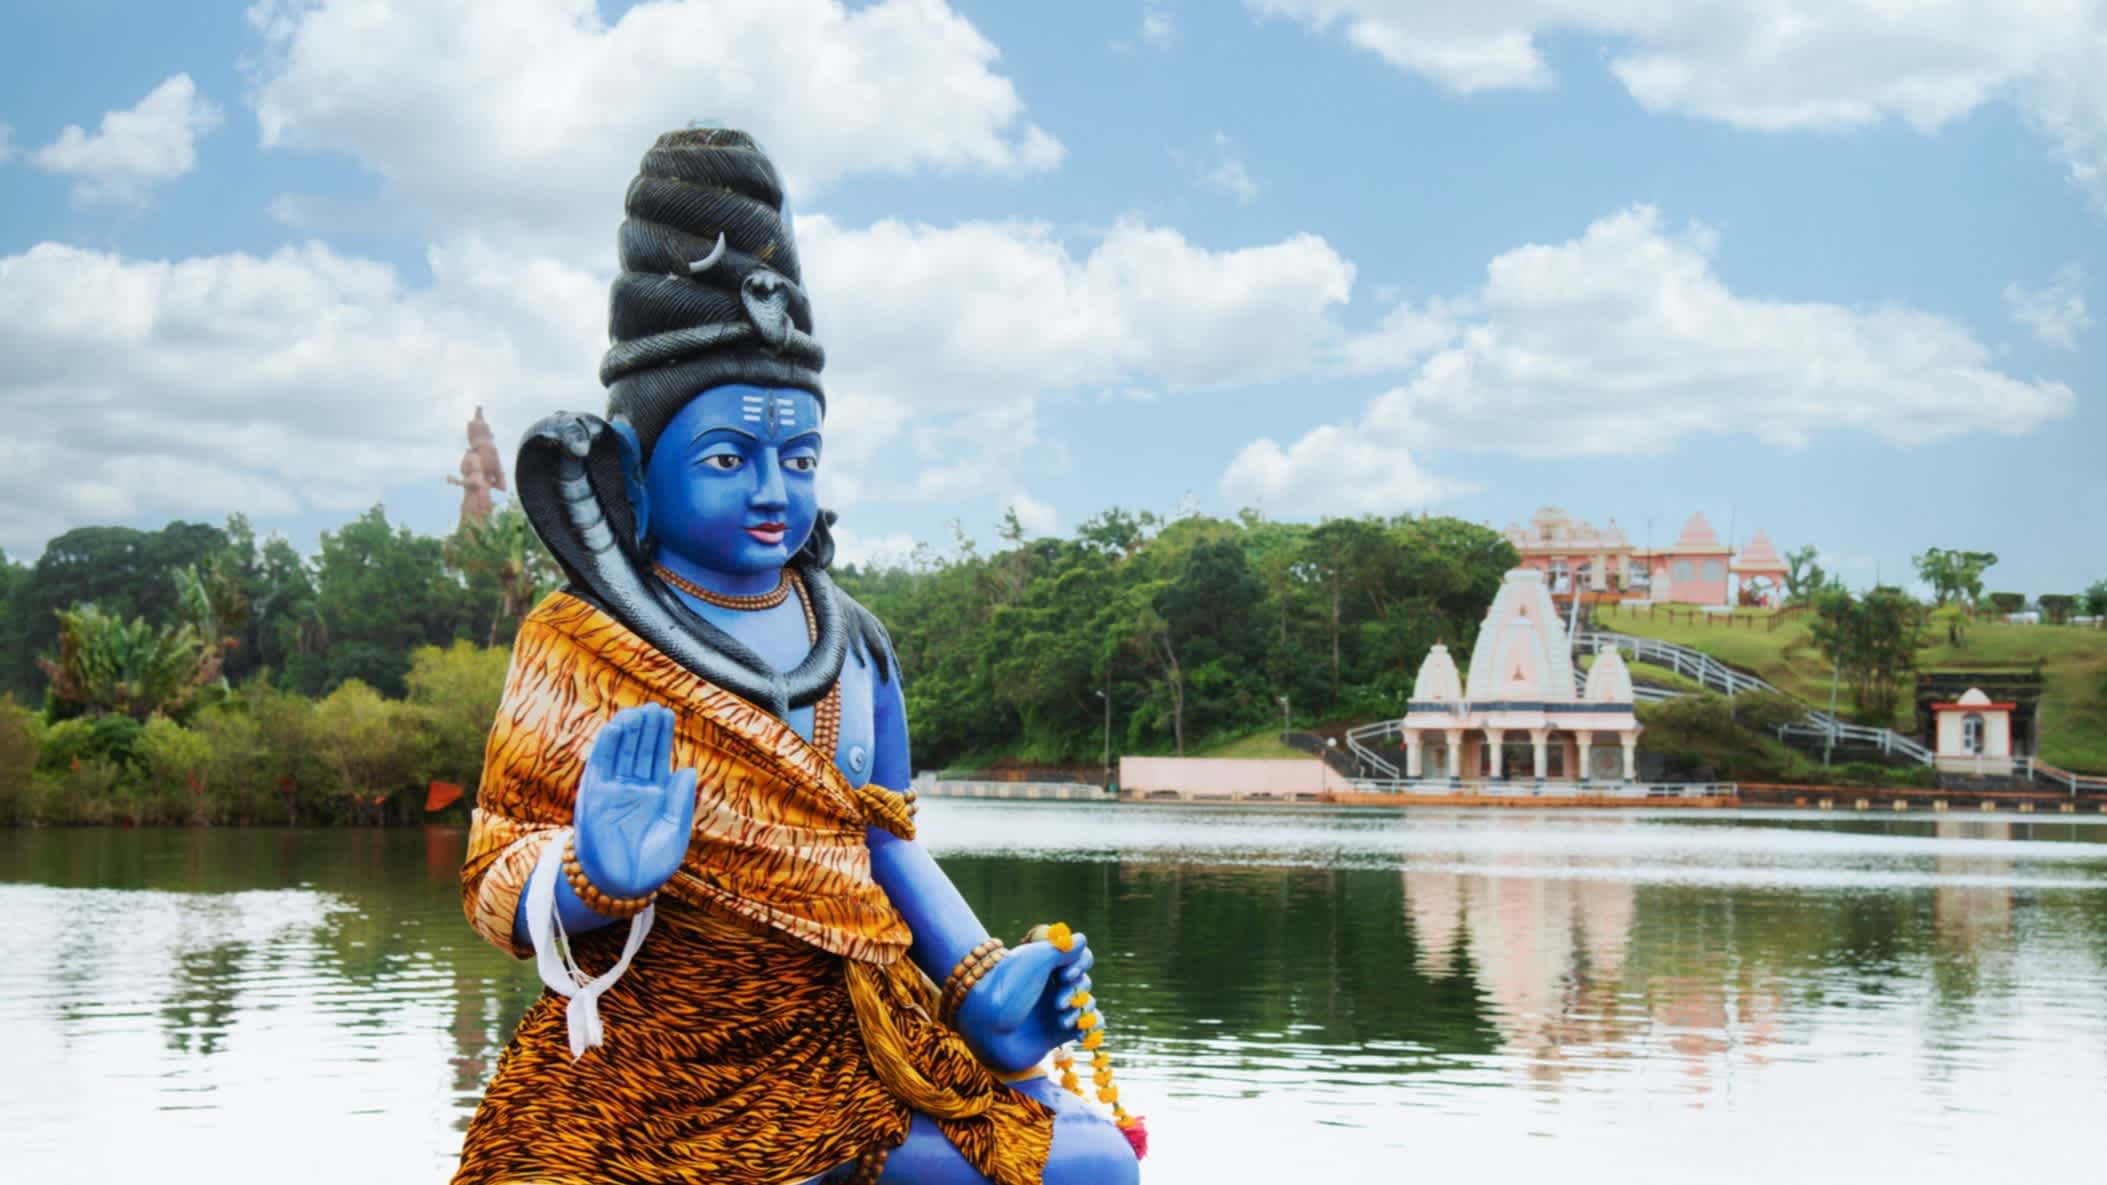 Blaue Shiva Statue im Vordergrund mit Grand Bassin Kratersee im Hintergrund 